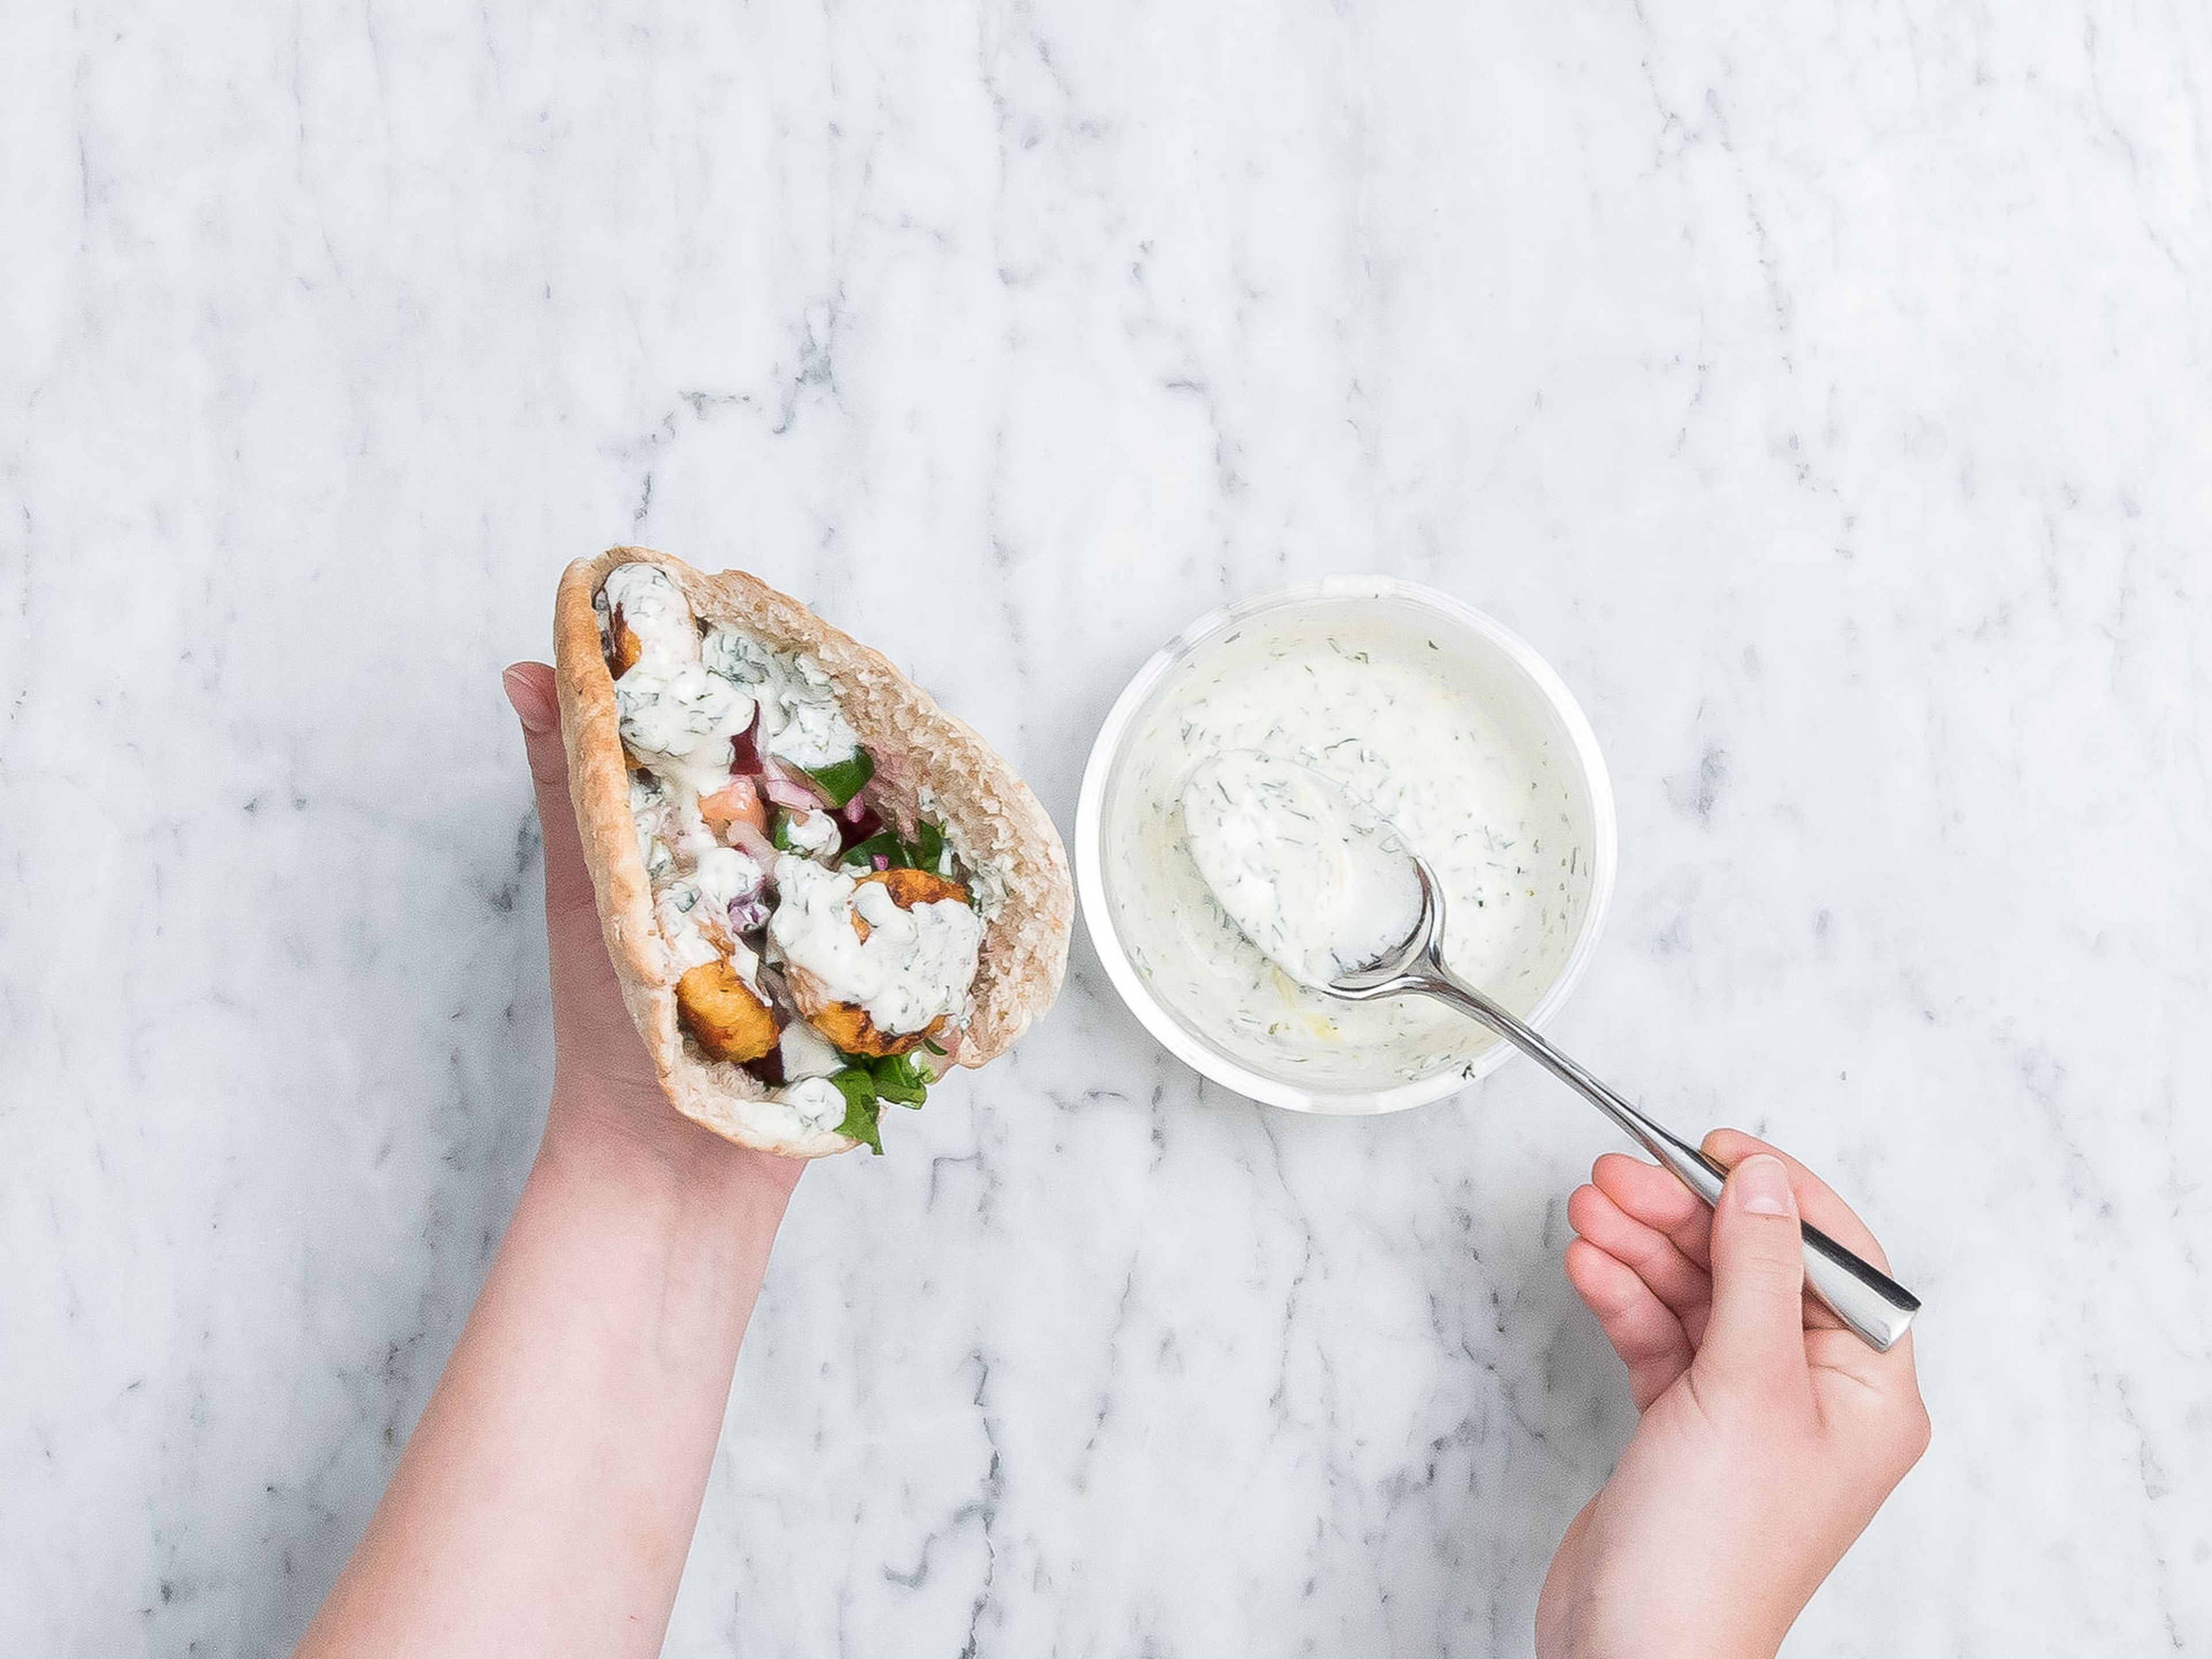 Pitabrote nach Belieben toasten und mit Salat und gebratenen vegetarischen Frikadellen befüllen. Mit Joghurt-Minz-Dip beträufeln. Guten Appetit!